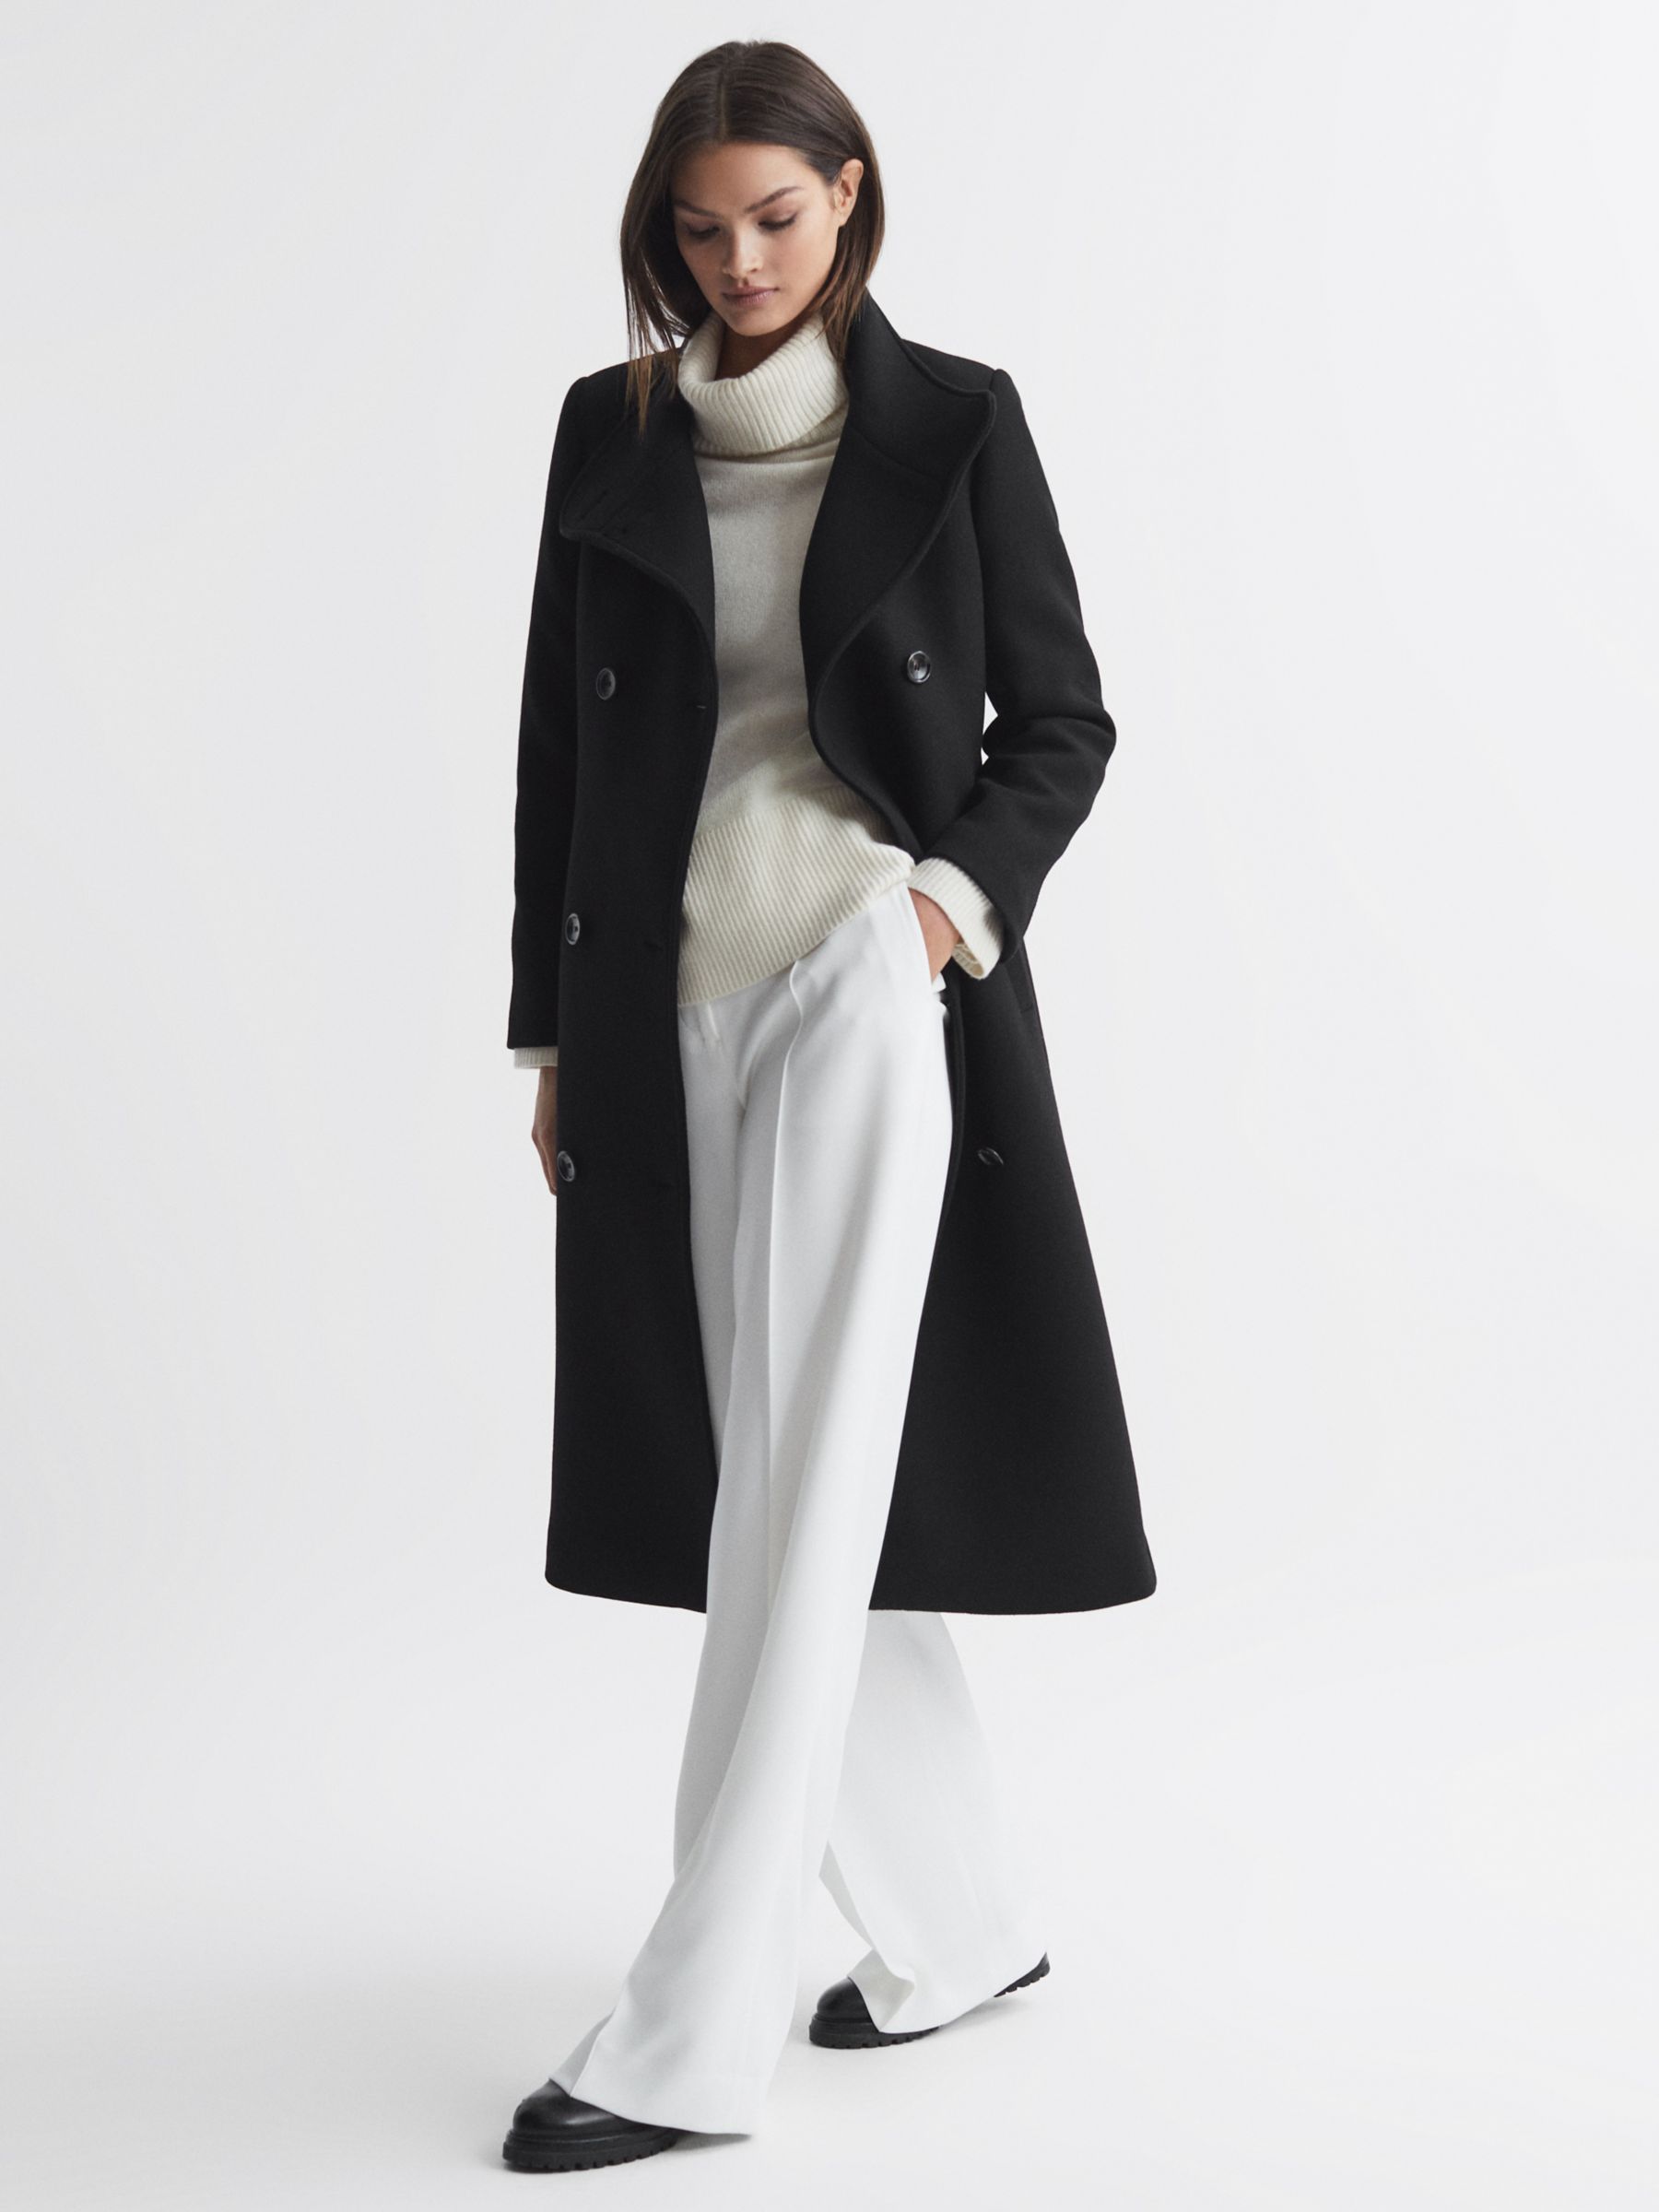 Buy Reiss Petite Blair Wool Blend Coat, Black Online at johnlewis.com